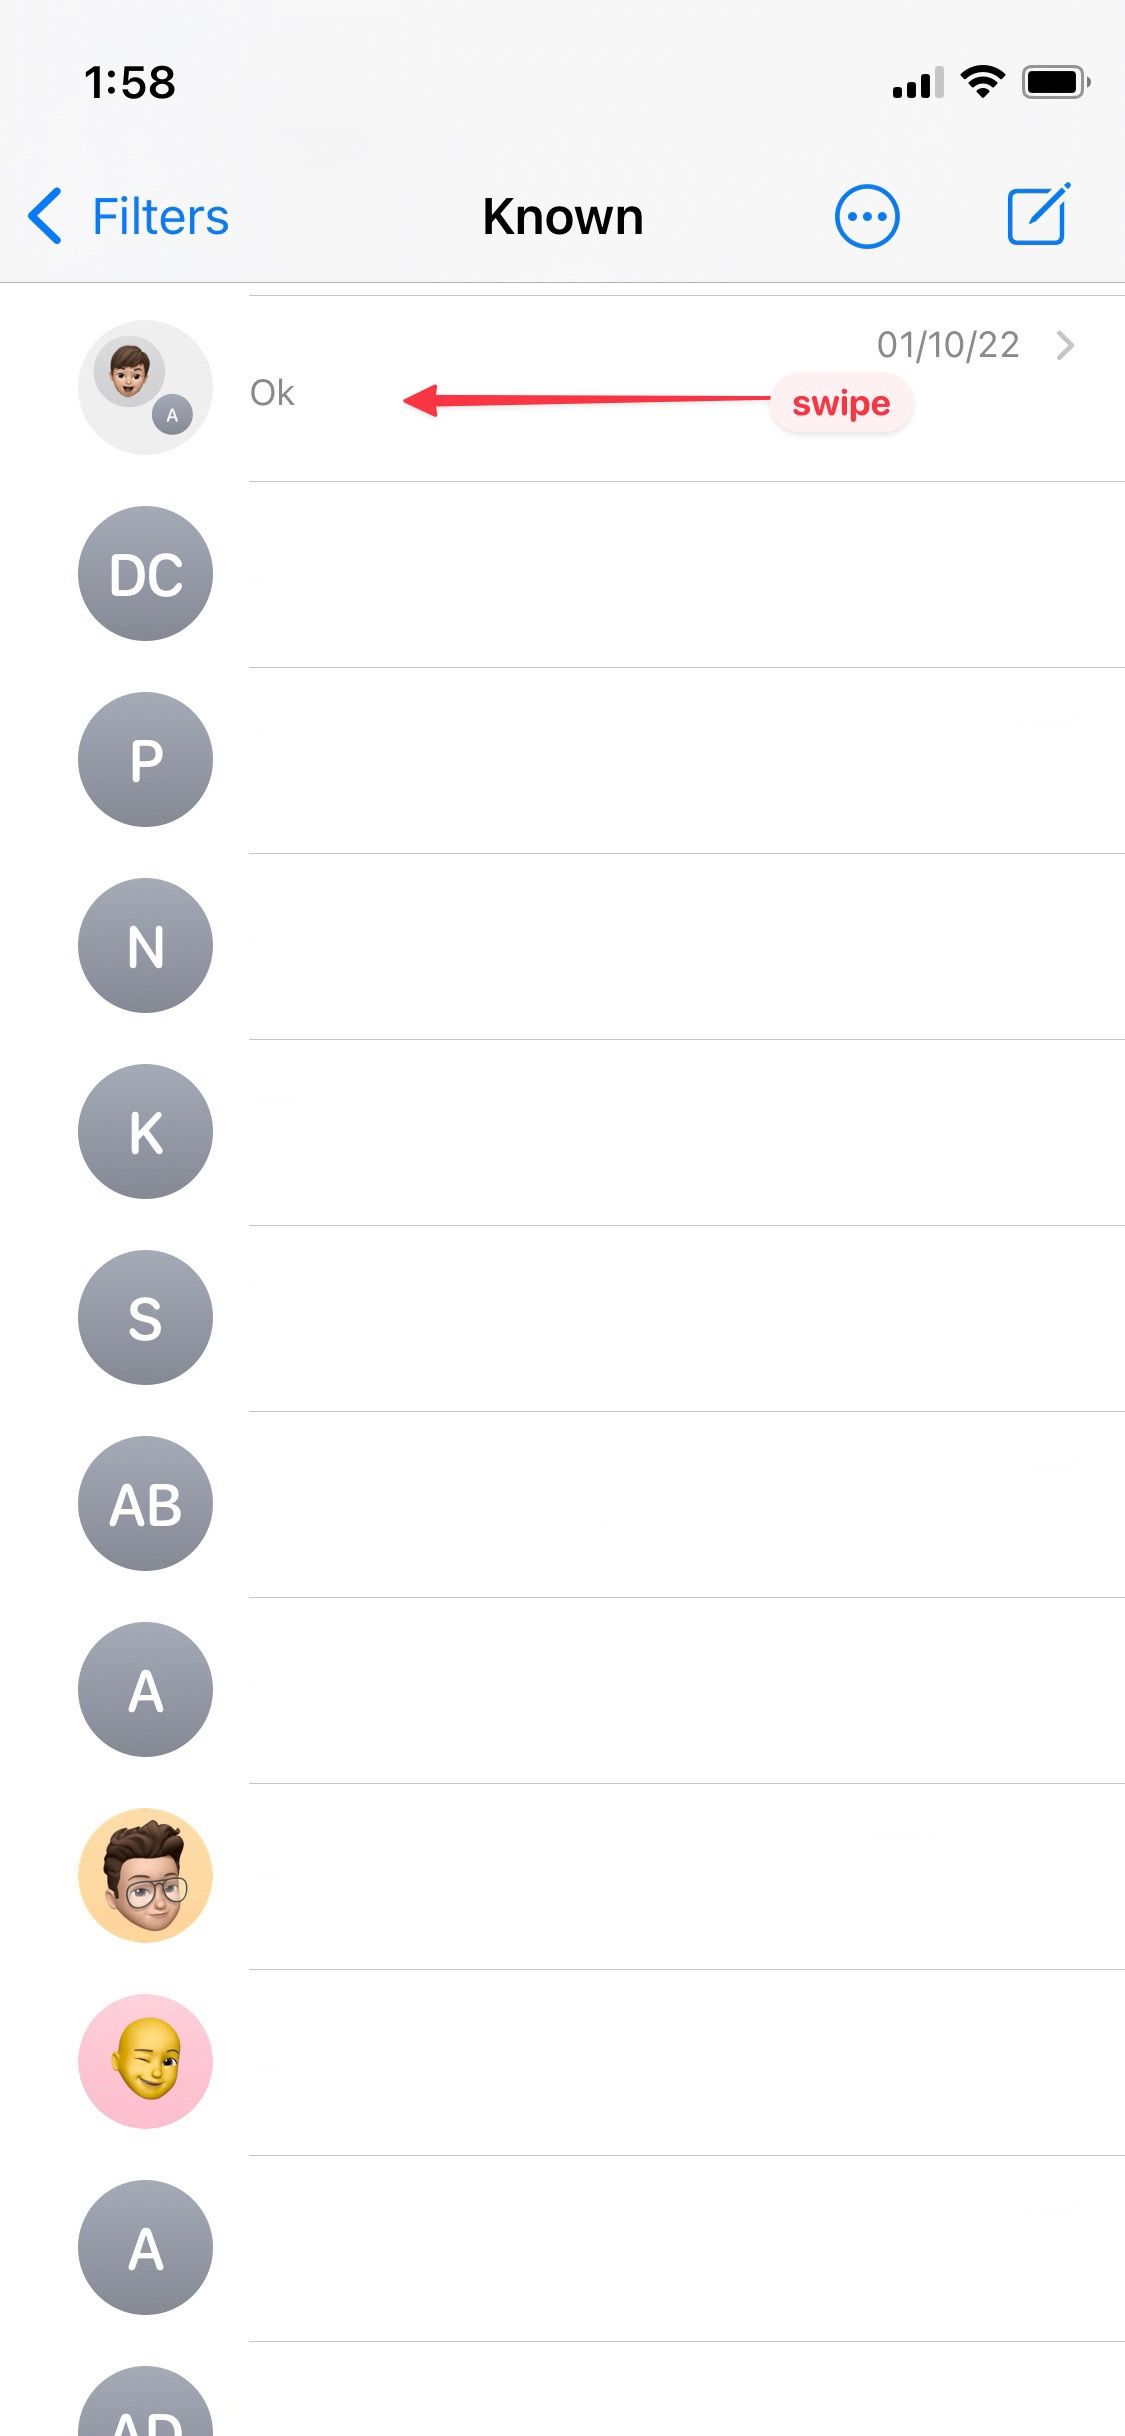 Uma captura de tela ilustrativa do aplicativo iMessage exibindo um tópico de mensagens com uma seta proeminente apontando da direita para a esquerda, indicando um movimento de deslizar.